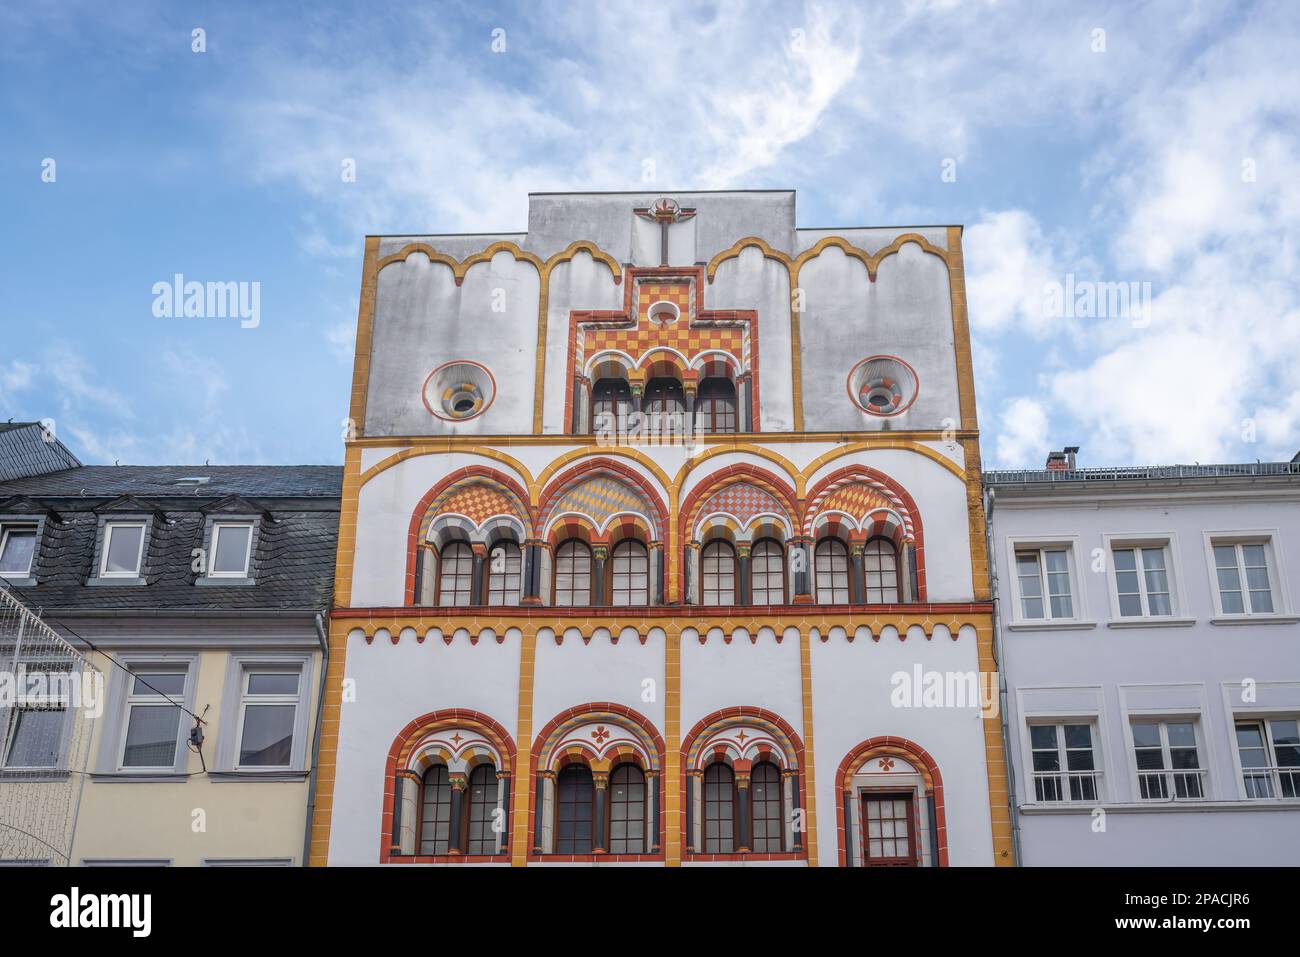 Trier, Deutschland - 30. Januar 2020: Dreikonigenhaus (Haus der drei Könige) Gebäude - Trier, Deutschland Stockfoto